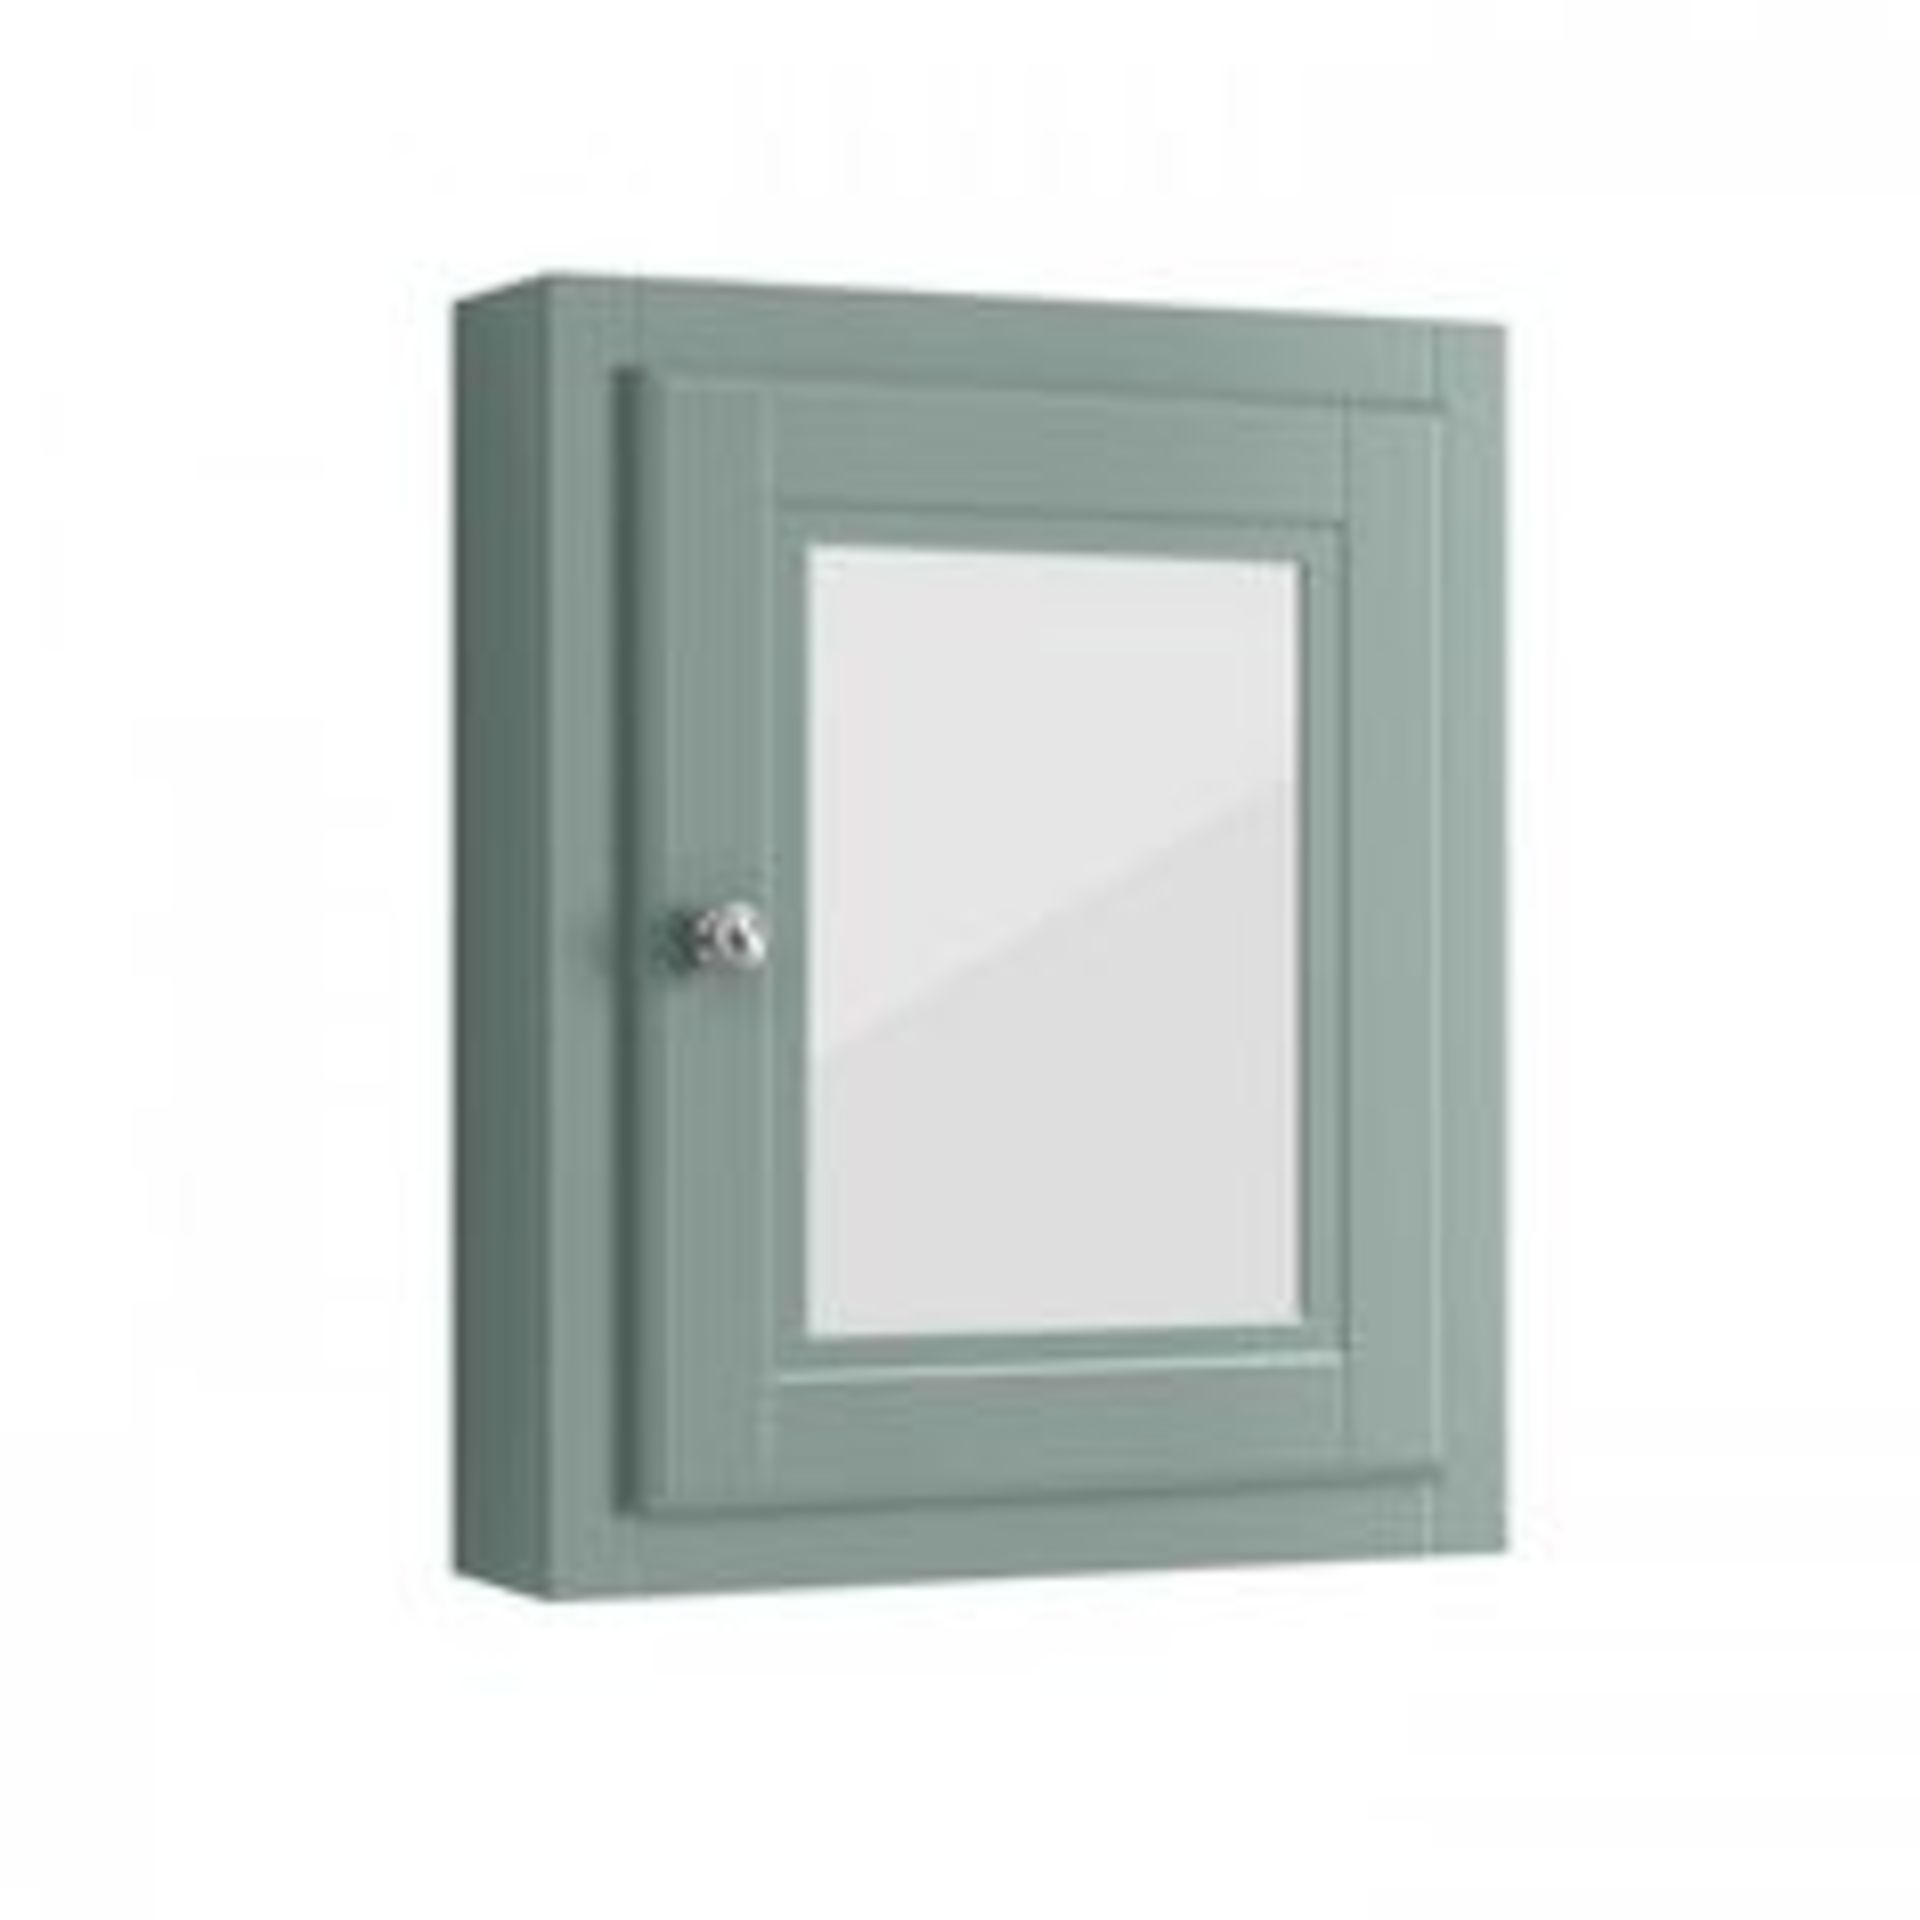 (RK174) Cambridge Single Door Mirror Cabinet _ Marine Mist. RRP £290.00. Traditional - Image 2 of 3